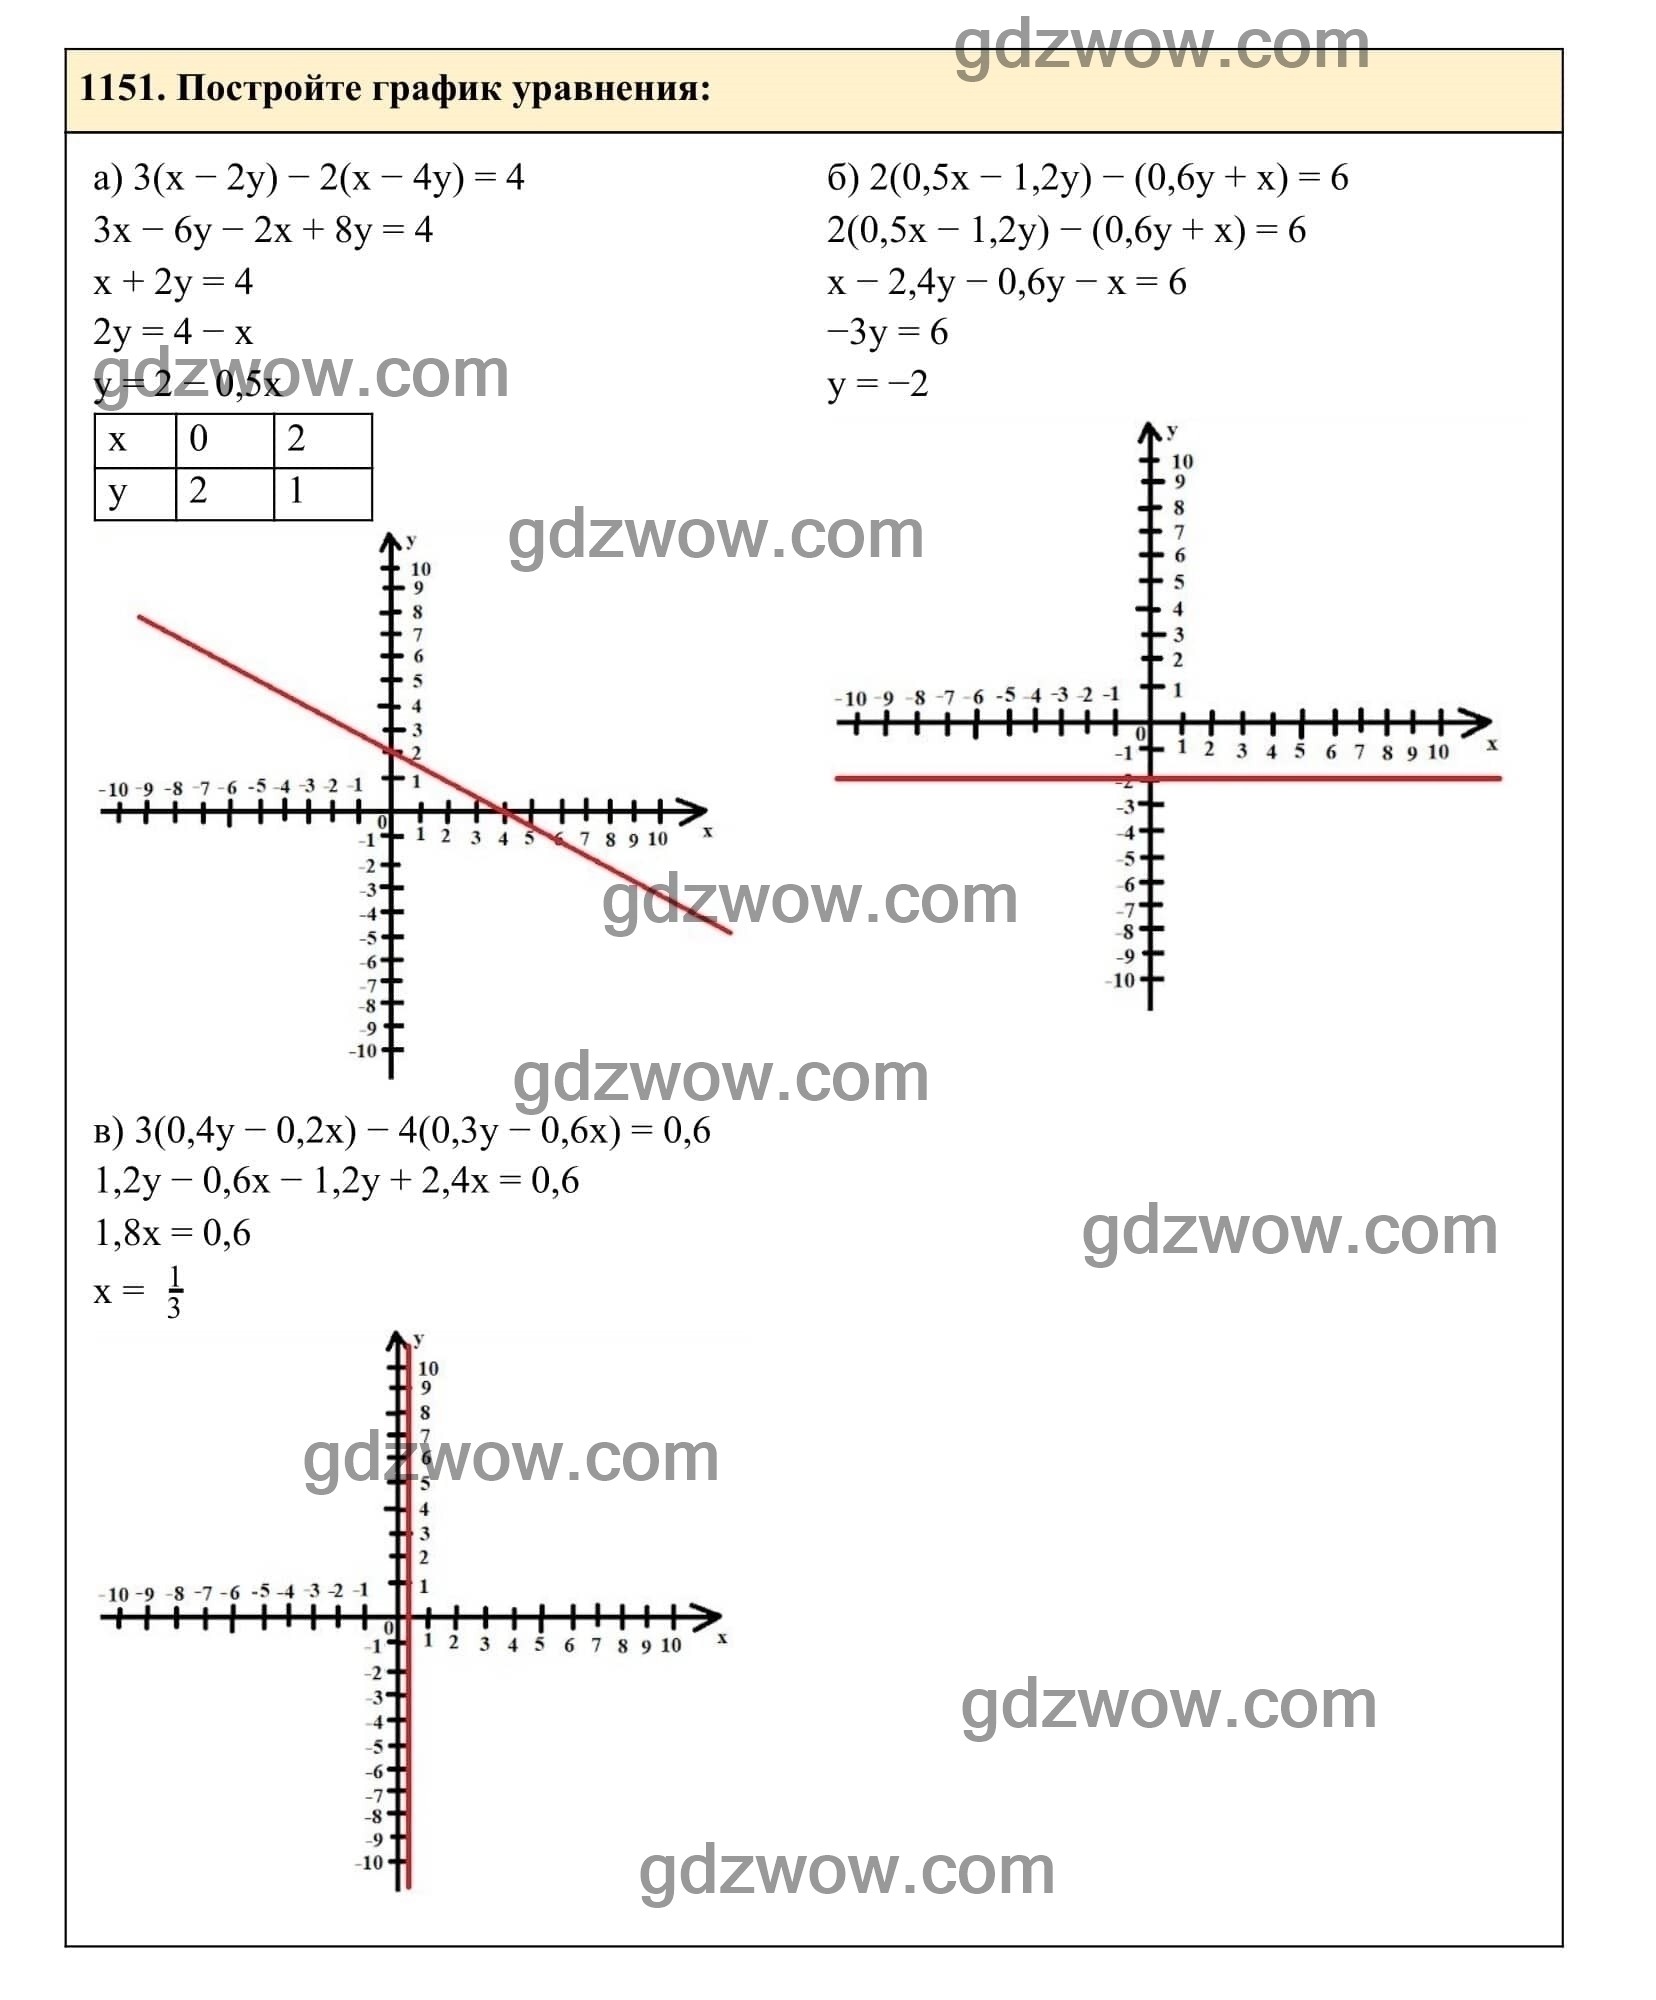 Упражнение 1151 - ГДЗ по Алгебре 7 класс Учебник Макарычев (решебник) - GDZwow